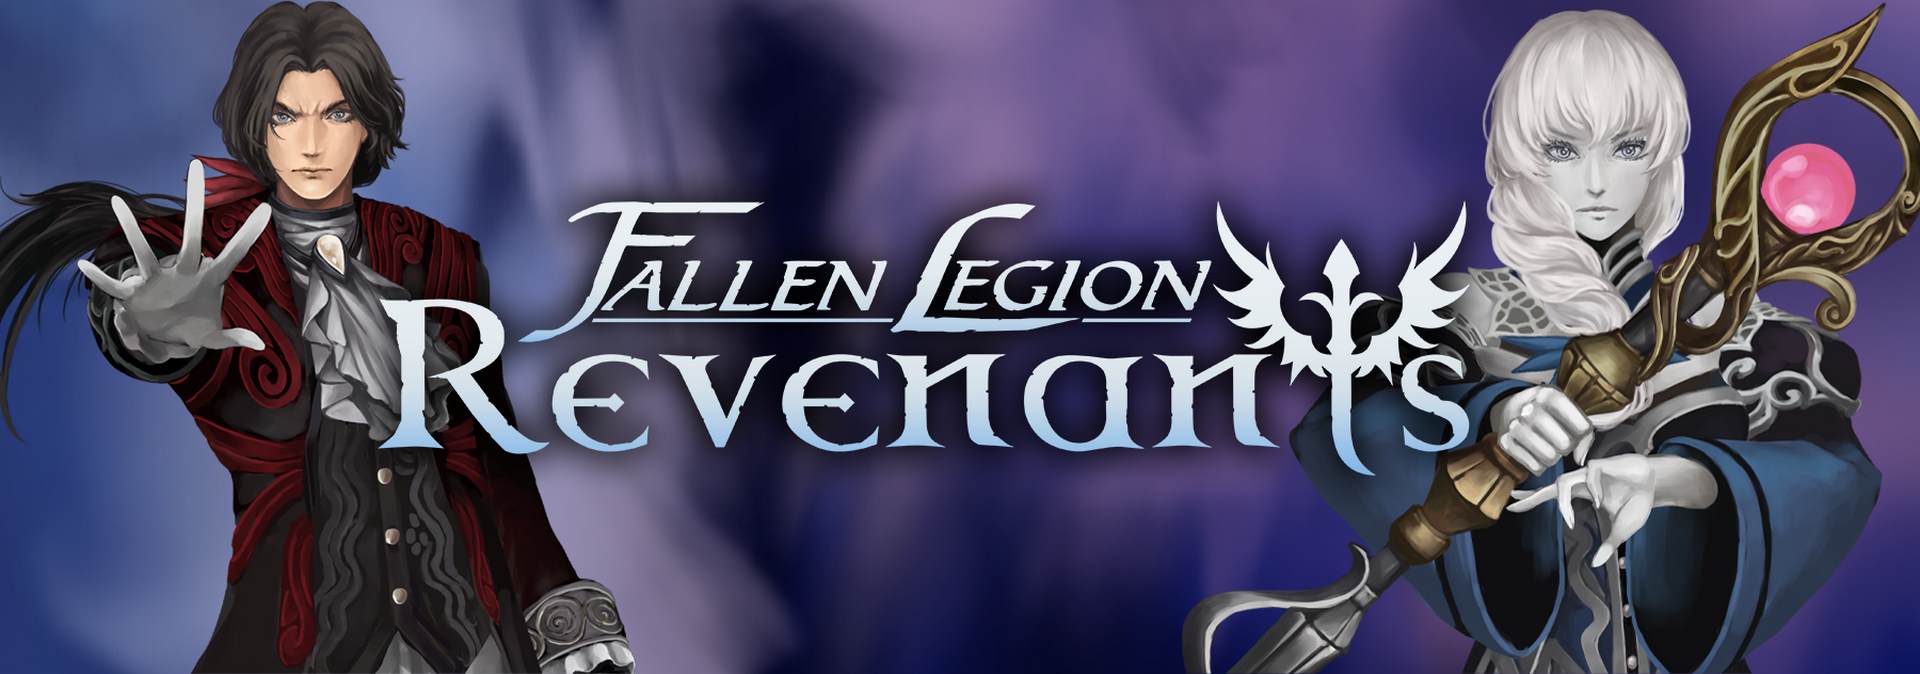 for mac download Fallen Legion Revenants